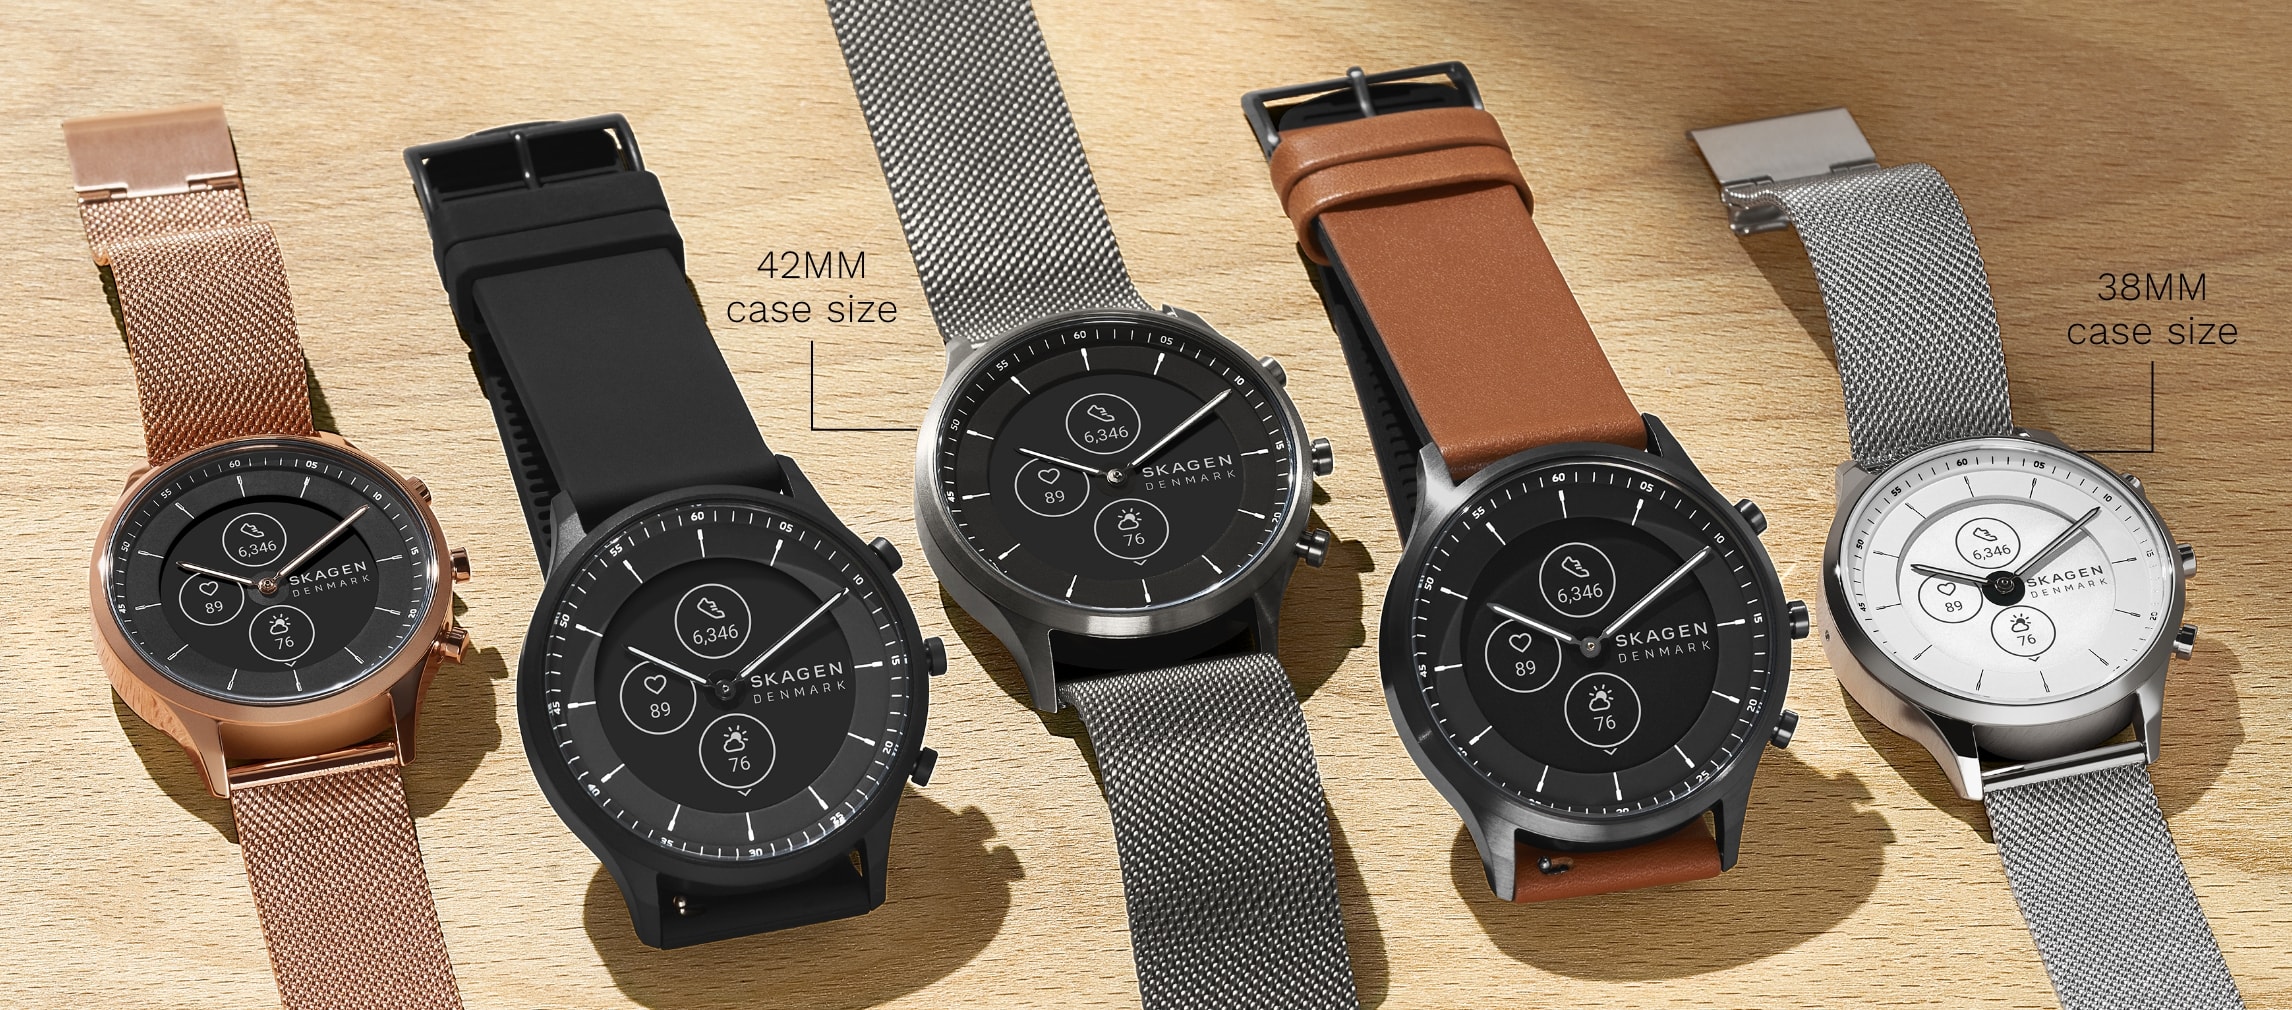 JORN GEN 6 ➡ Smartwatch híbrido con Alexa y SpO2